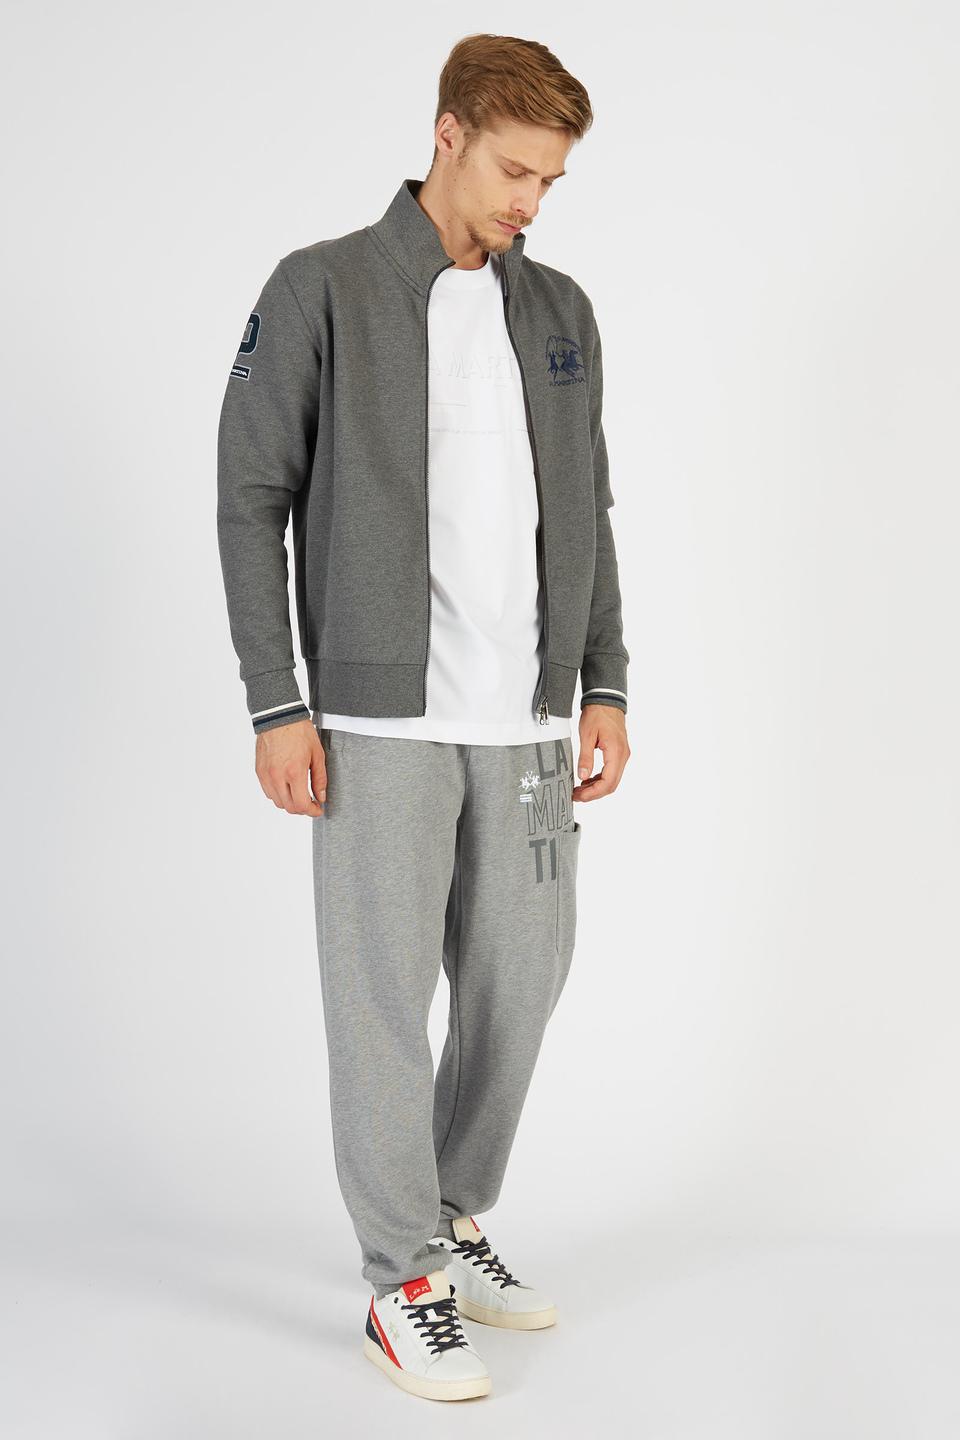 Pantalone da uomo modello jogger in cotone regular fit | La Martina - Official Online Shop